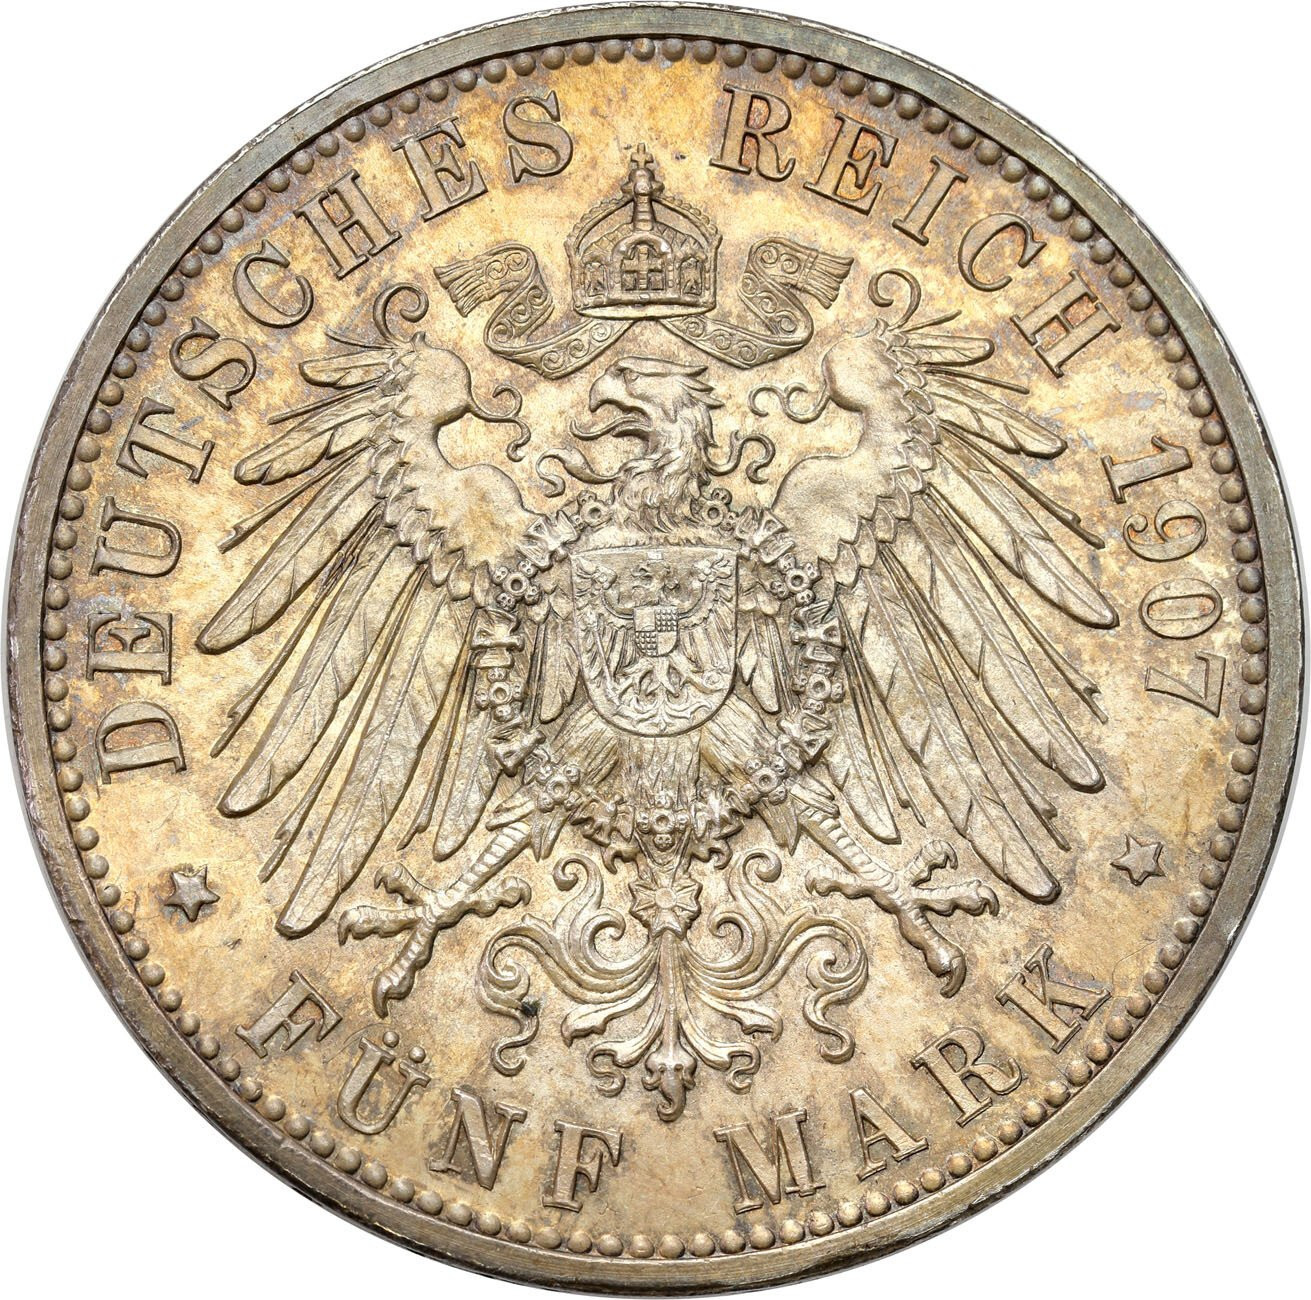 Niemcy, Badenia. 5 marek 1907, Karlsruhe – PIĘKNE 